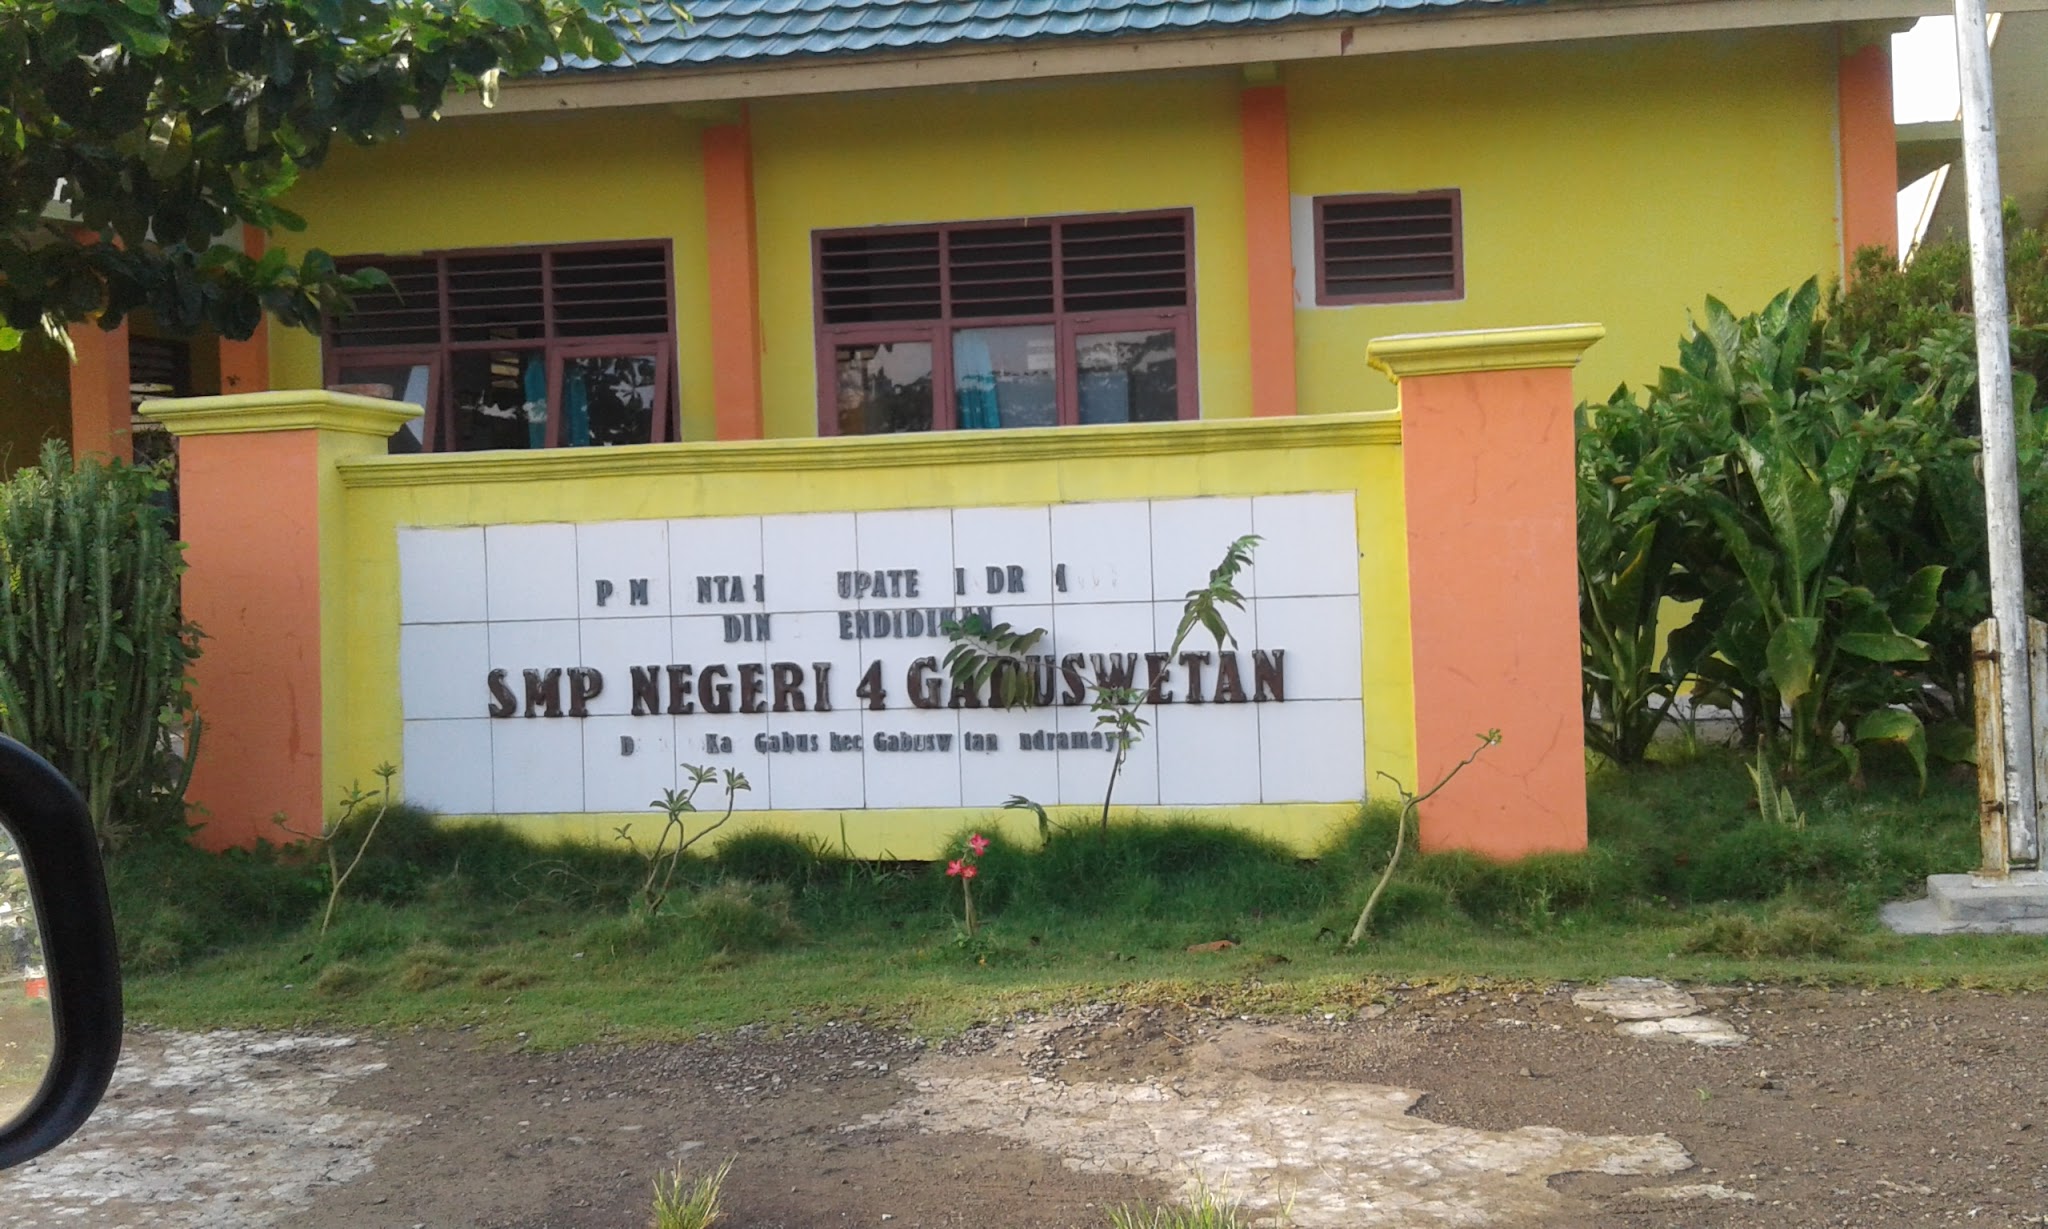 Foto UPTD  SMP Negeri 4 Gabuswetan, Kab. Indramayu